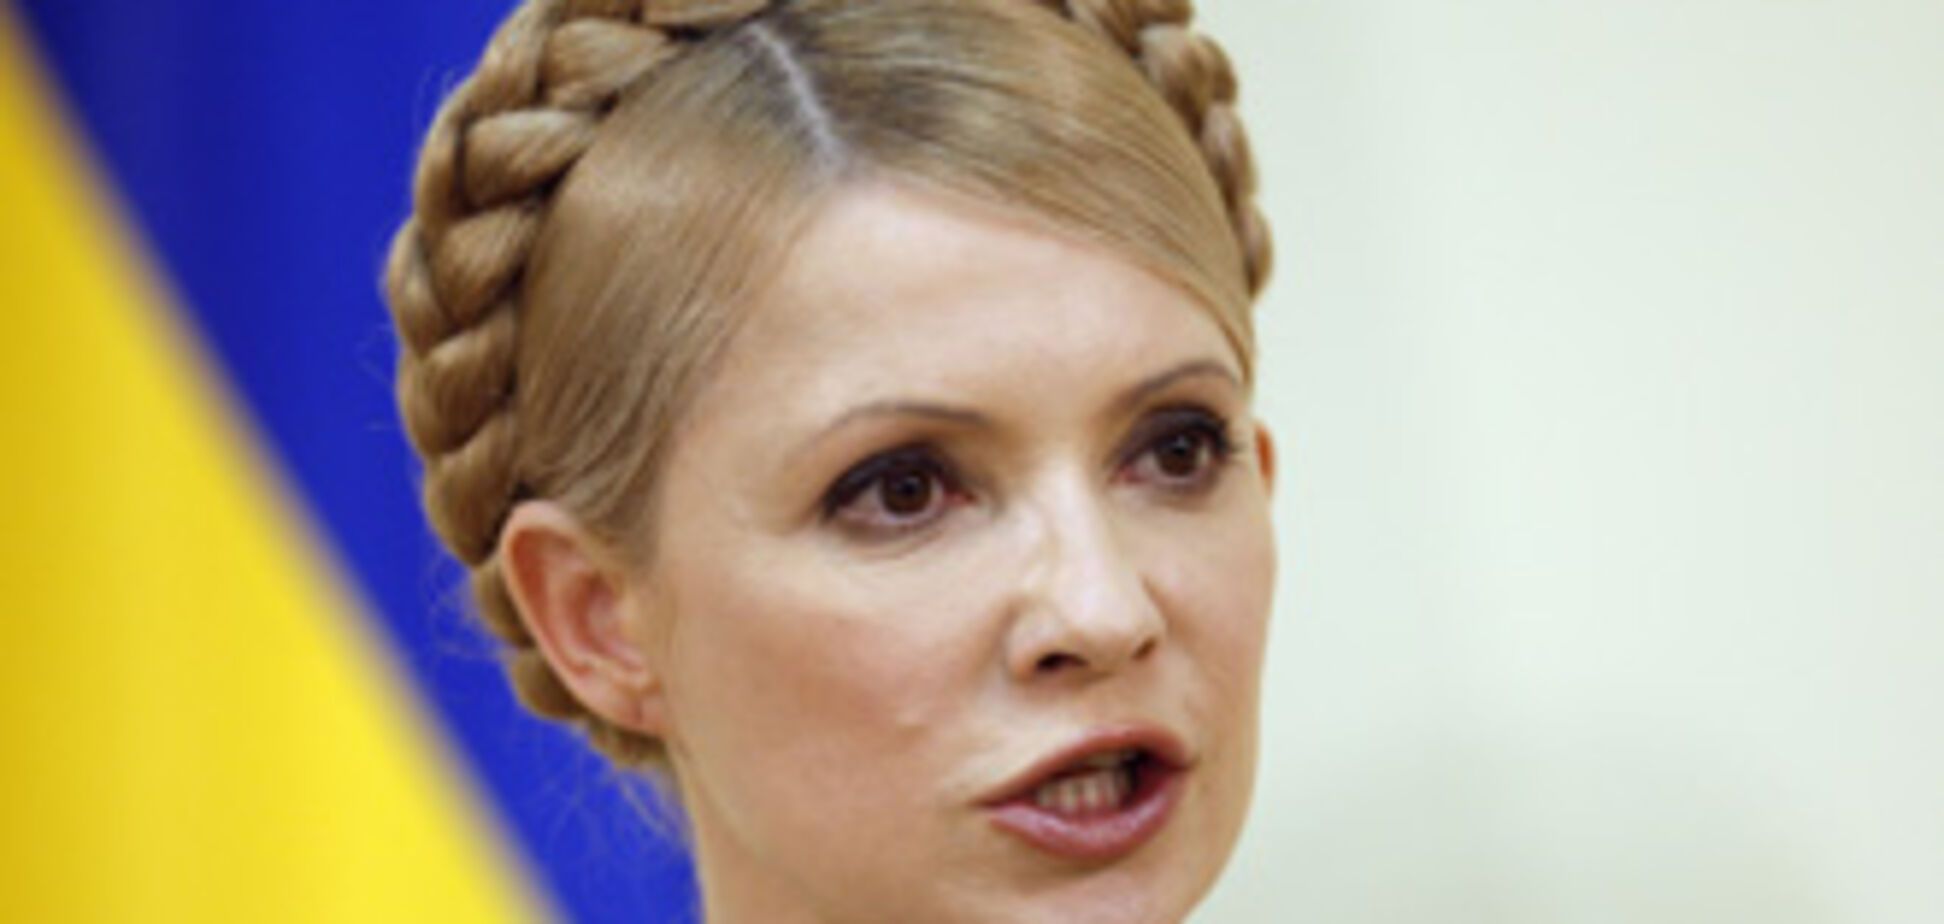 Тимошенко открещивается от слов Путина: Он врет